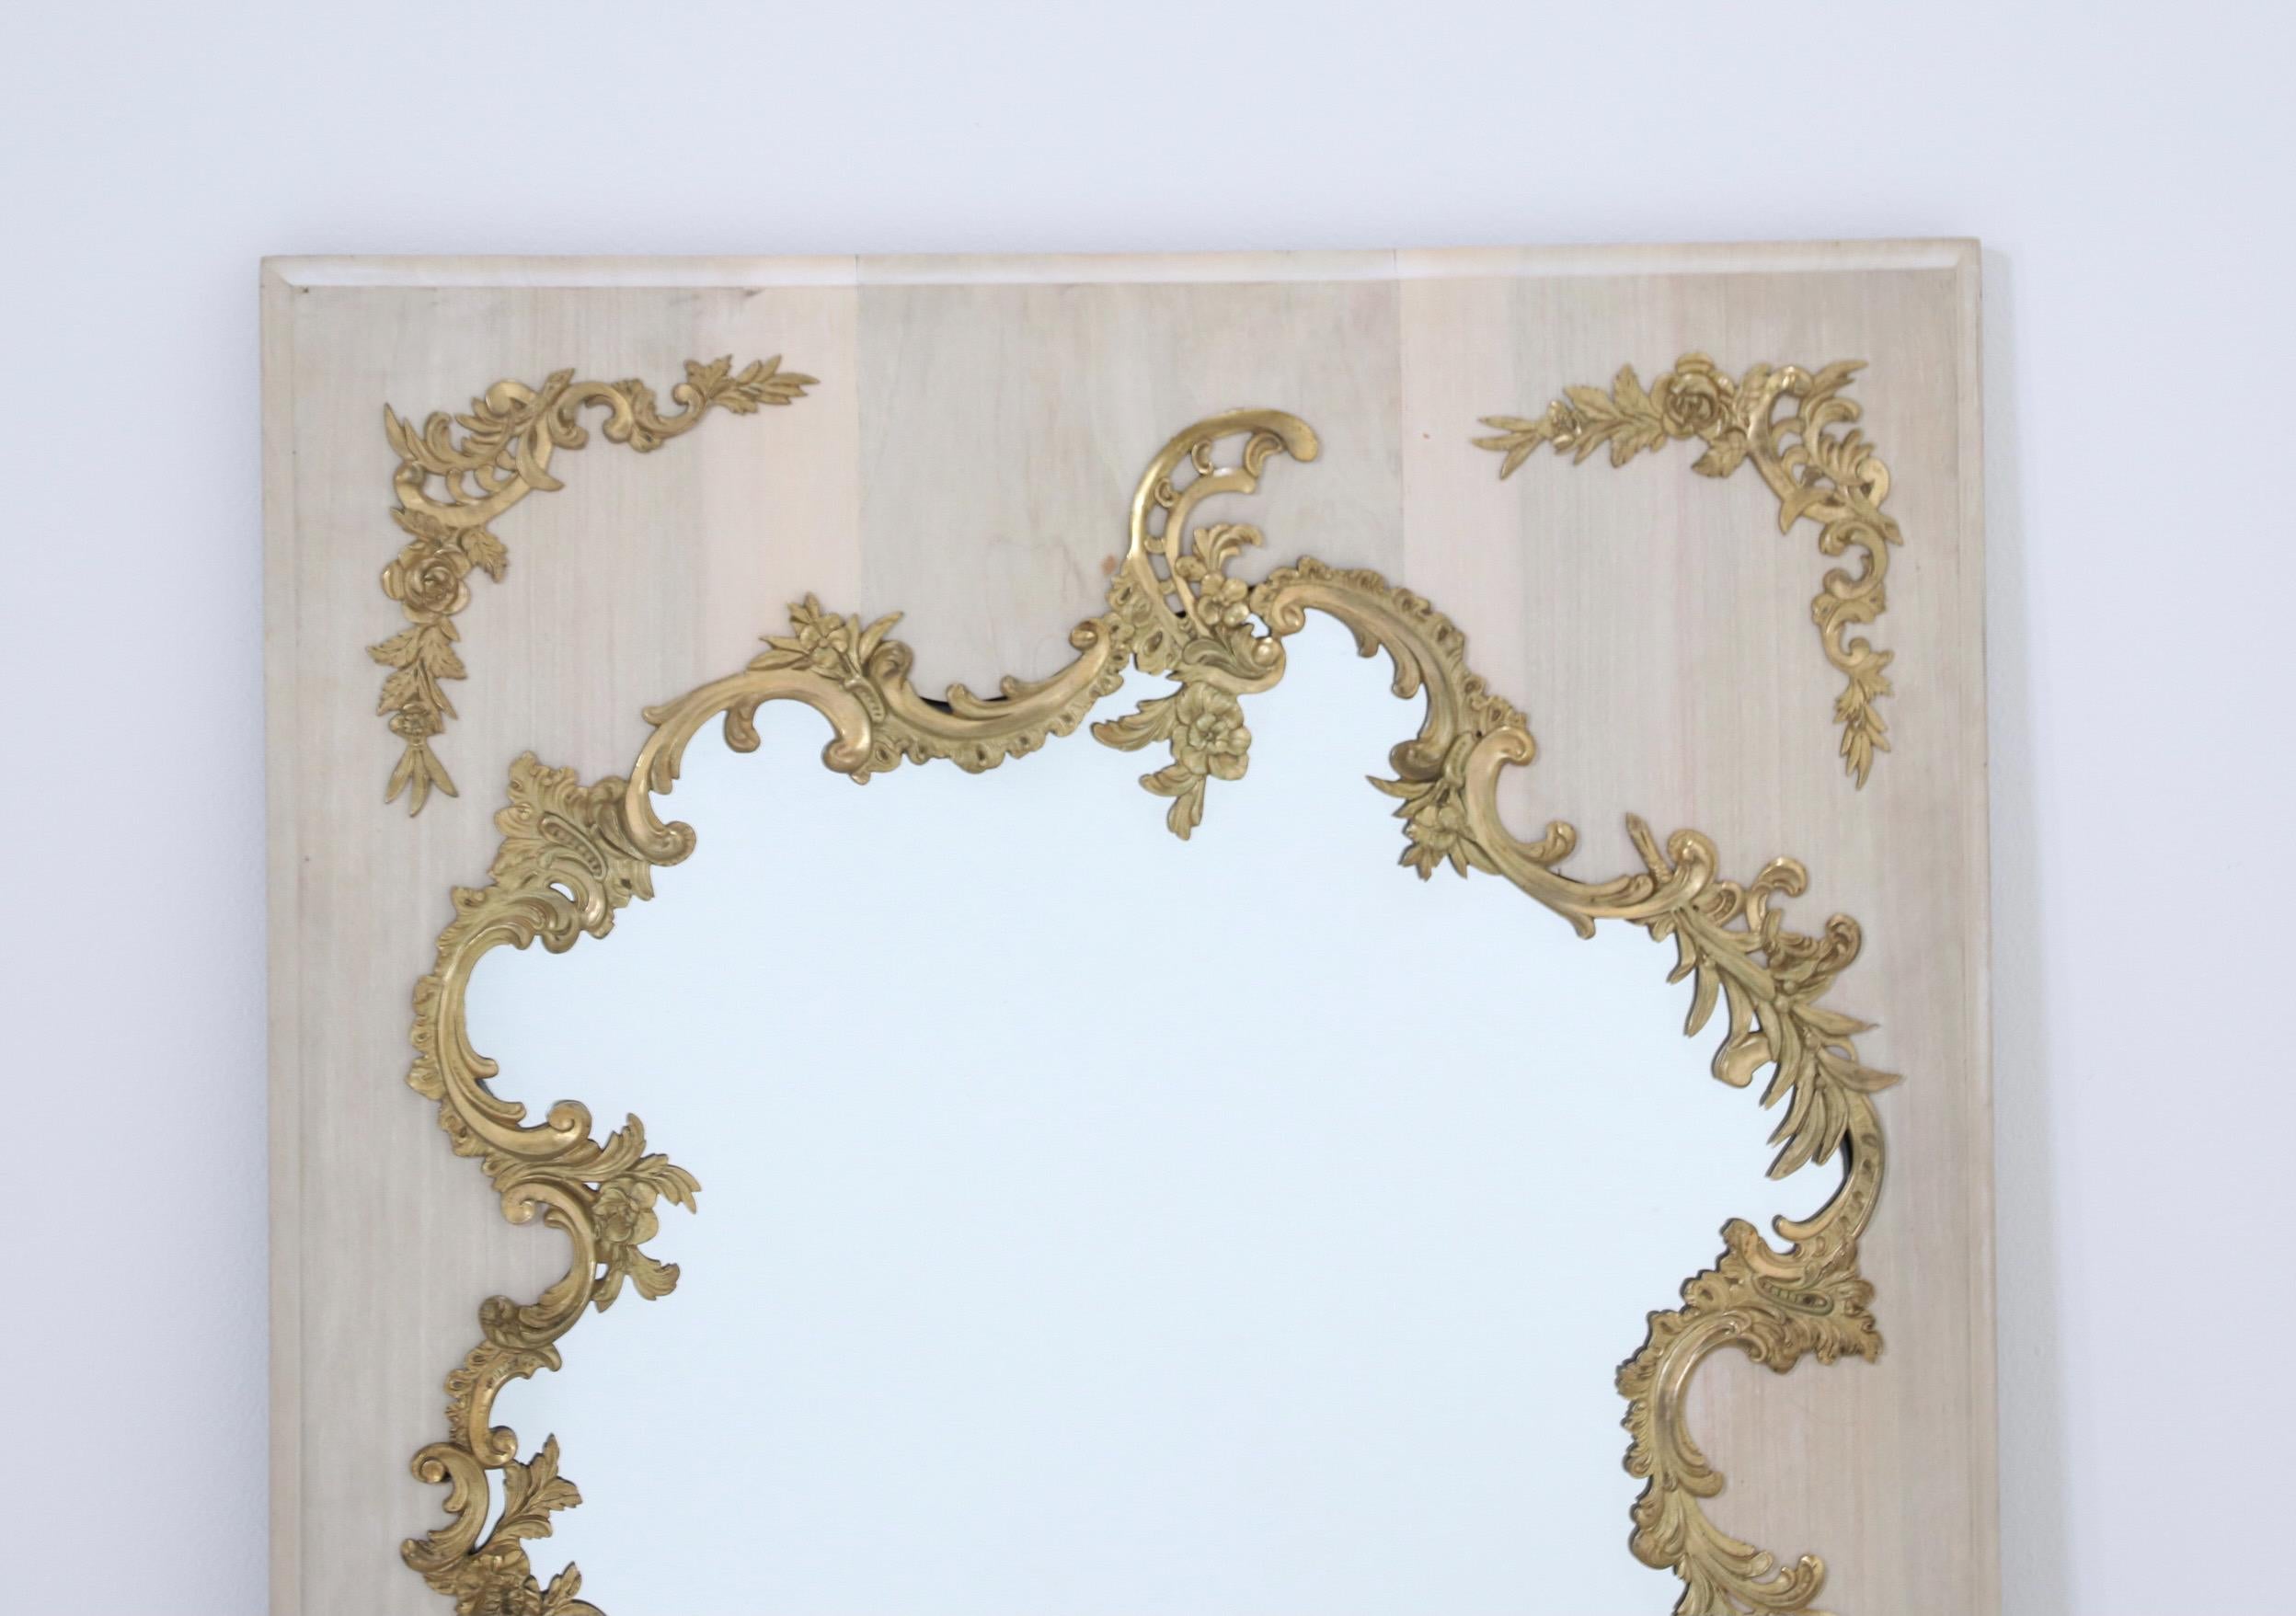 Magnifique miroir ancien de style Louis XV du 19ème siècle.

Le miroir est composé d'un cadre en bois massif d'acajou blanchi avec de magnifiques décorations détaillées en bronze orné. 

